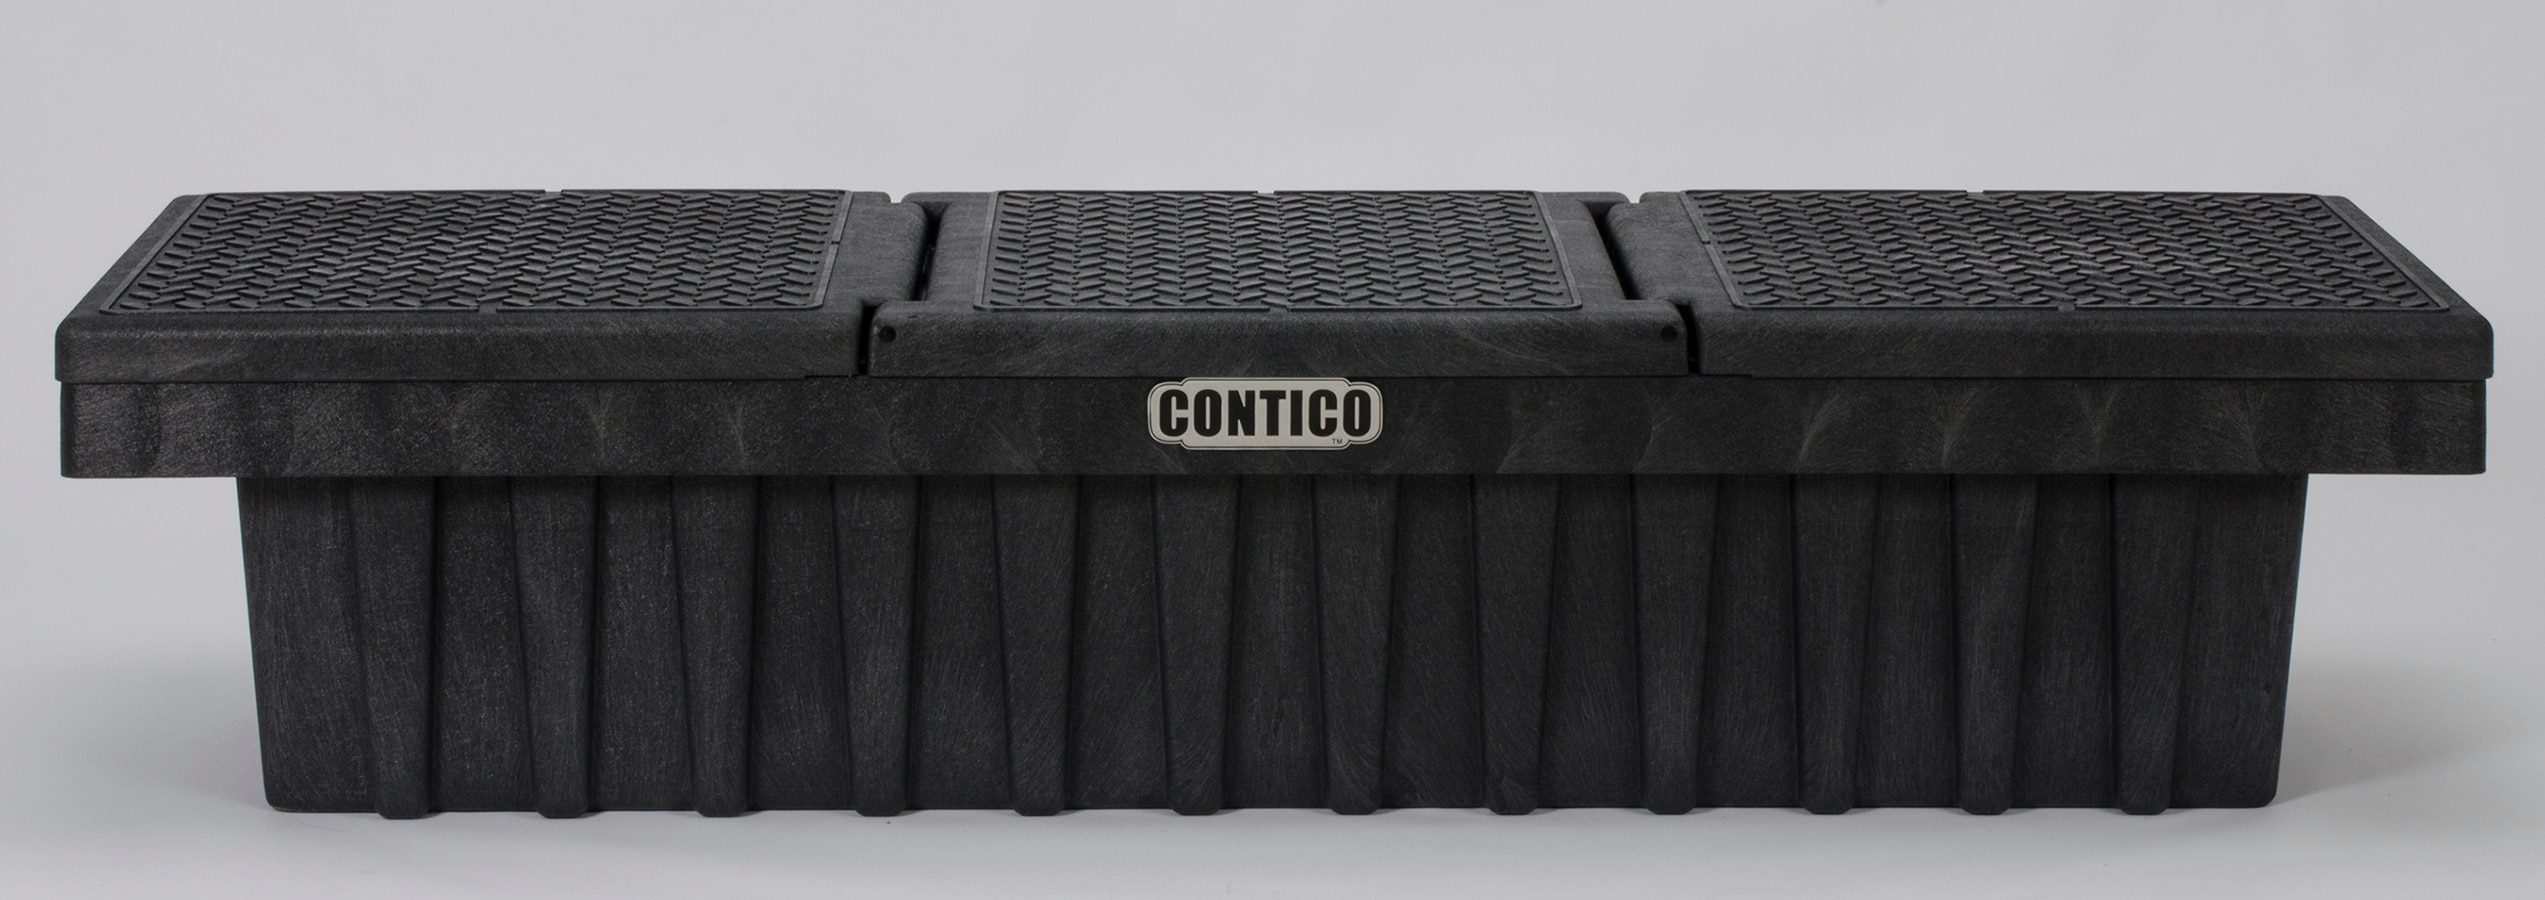 Contico Portable Tool Box, Matte Black